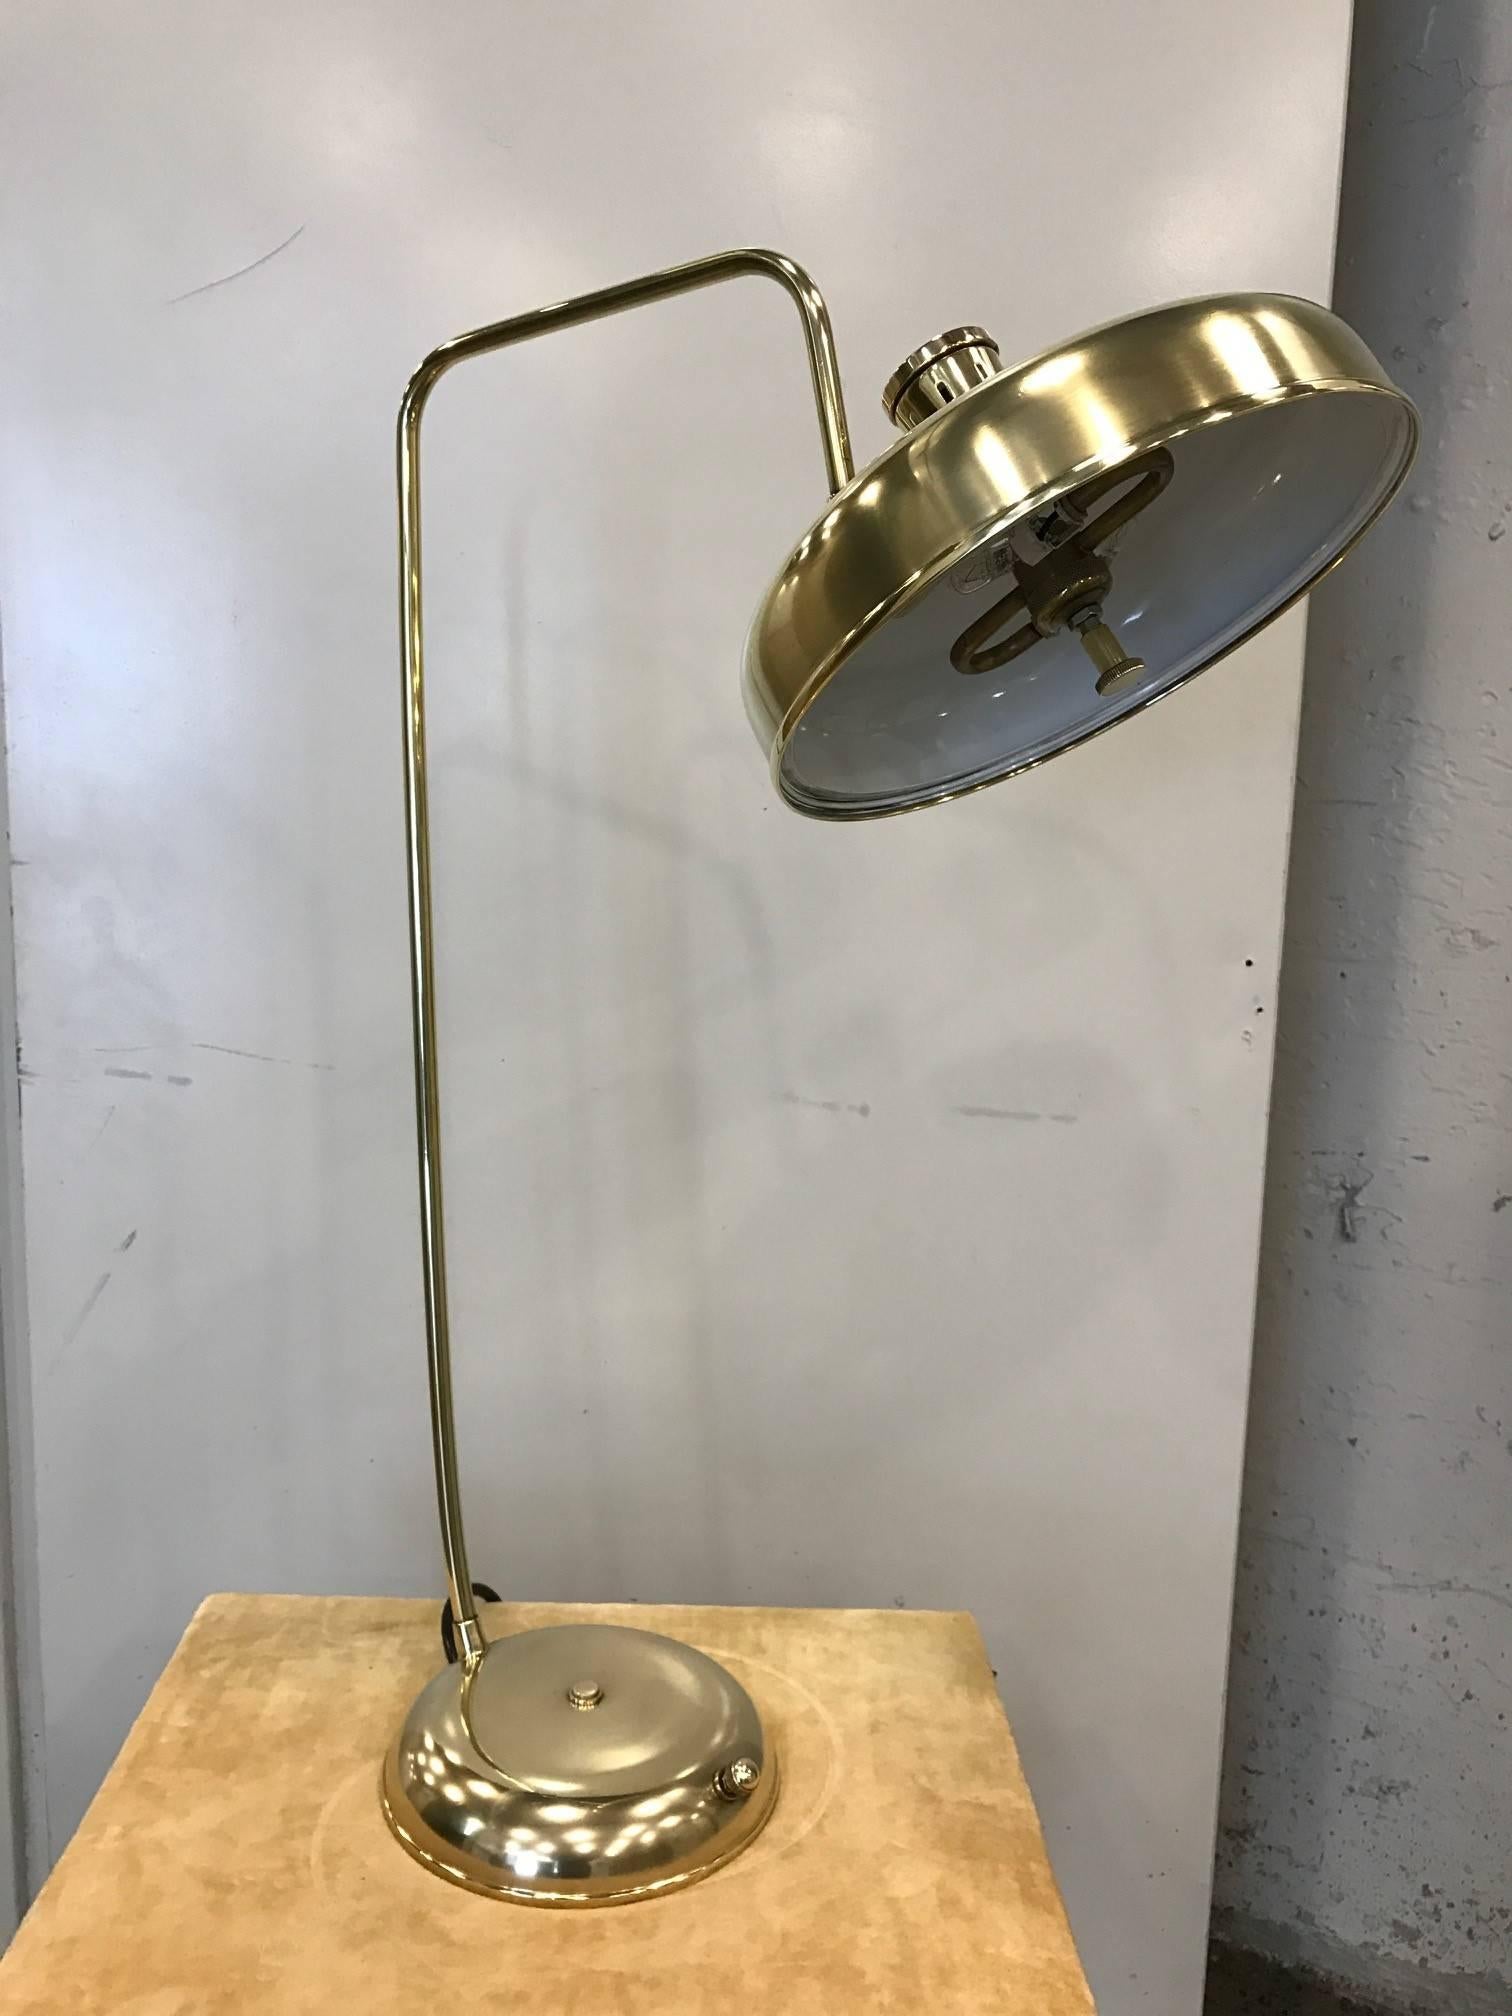 lampe de bureau italienne des années 1950 en laiton poli. A une teinte directionnelle. Lampe de style industriel.
Mesures : 30.5 de hauteur, abat-jour 12 de diamètre, base 8,5 de diamètre.